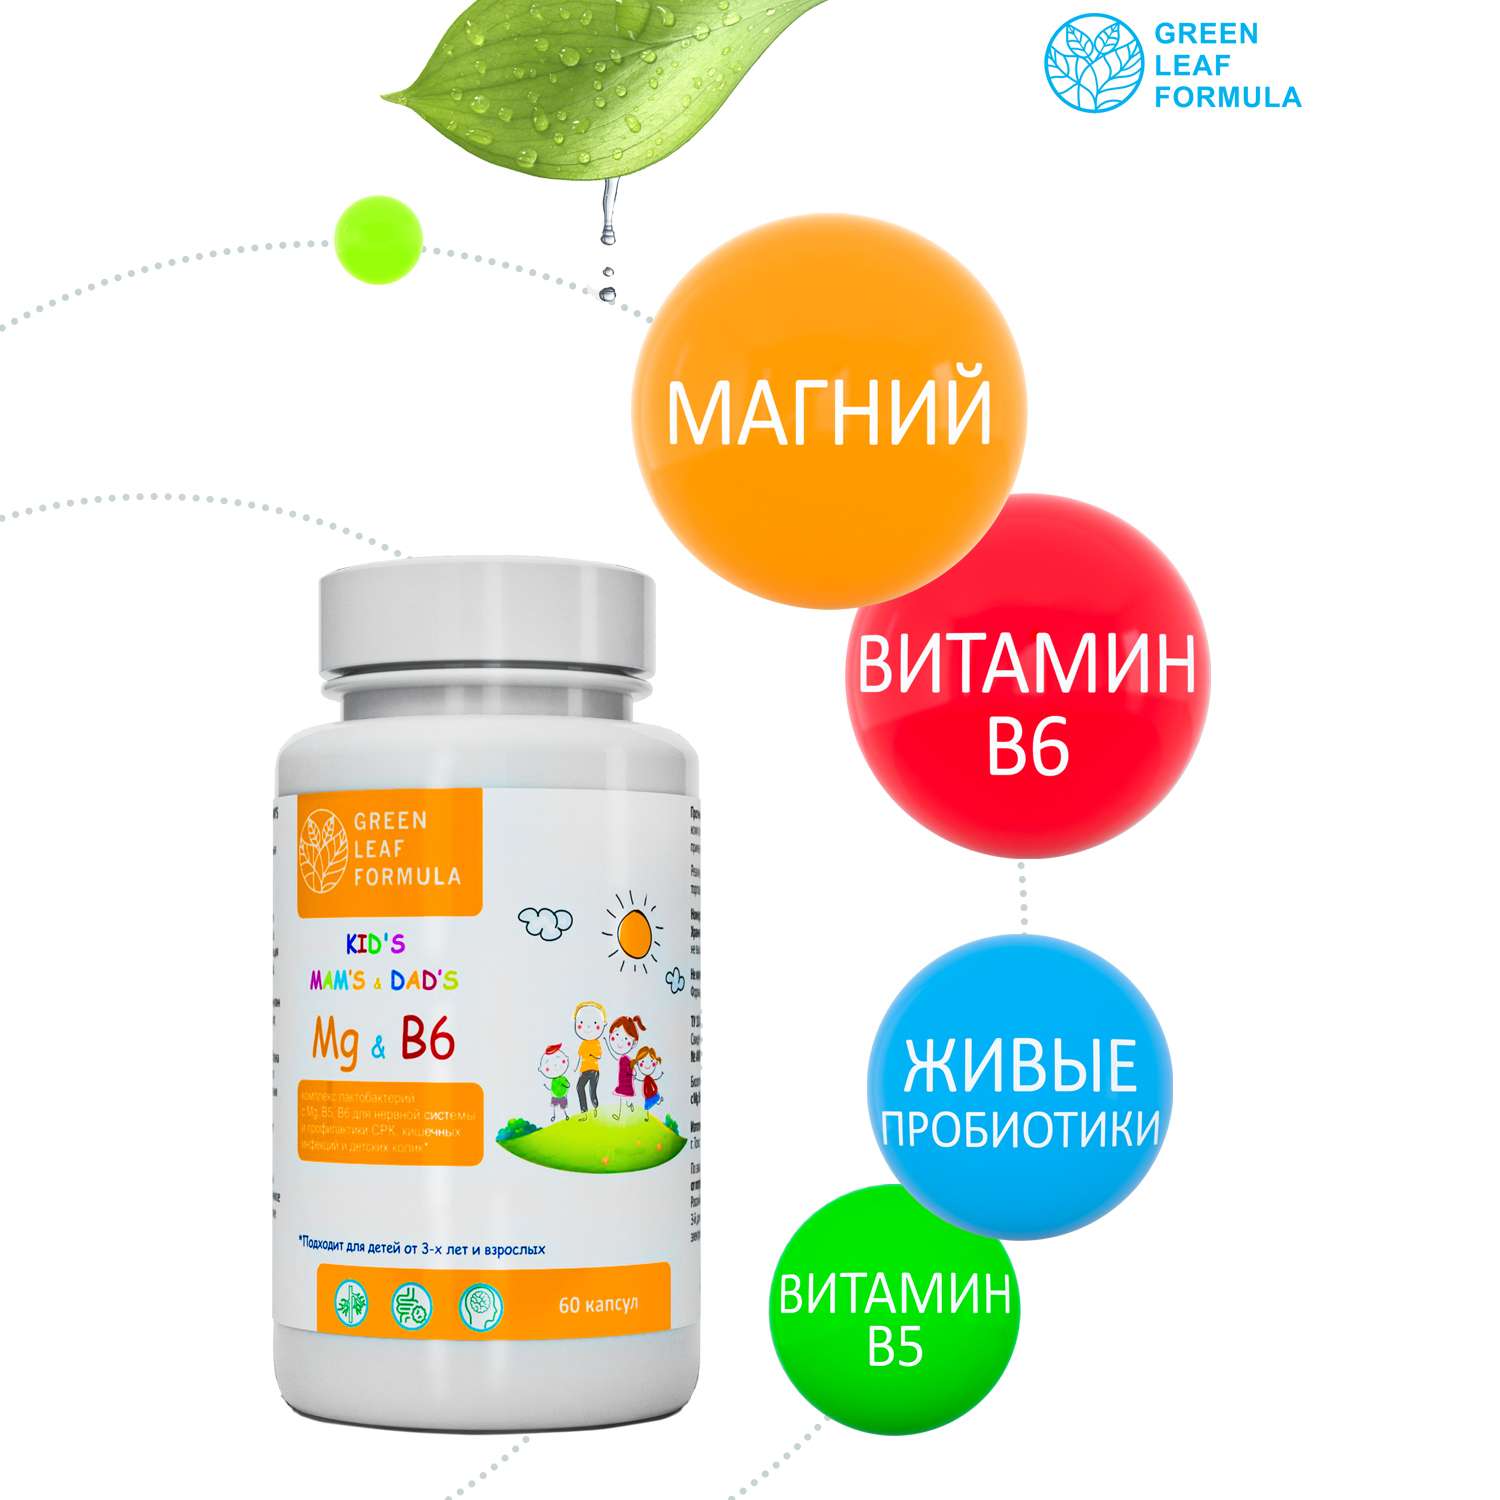 Детский магний В6 для мозга Green Leaf Formula лактобактерии метабиотики для кишечника витамины и минералы - фото 4